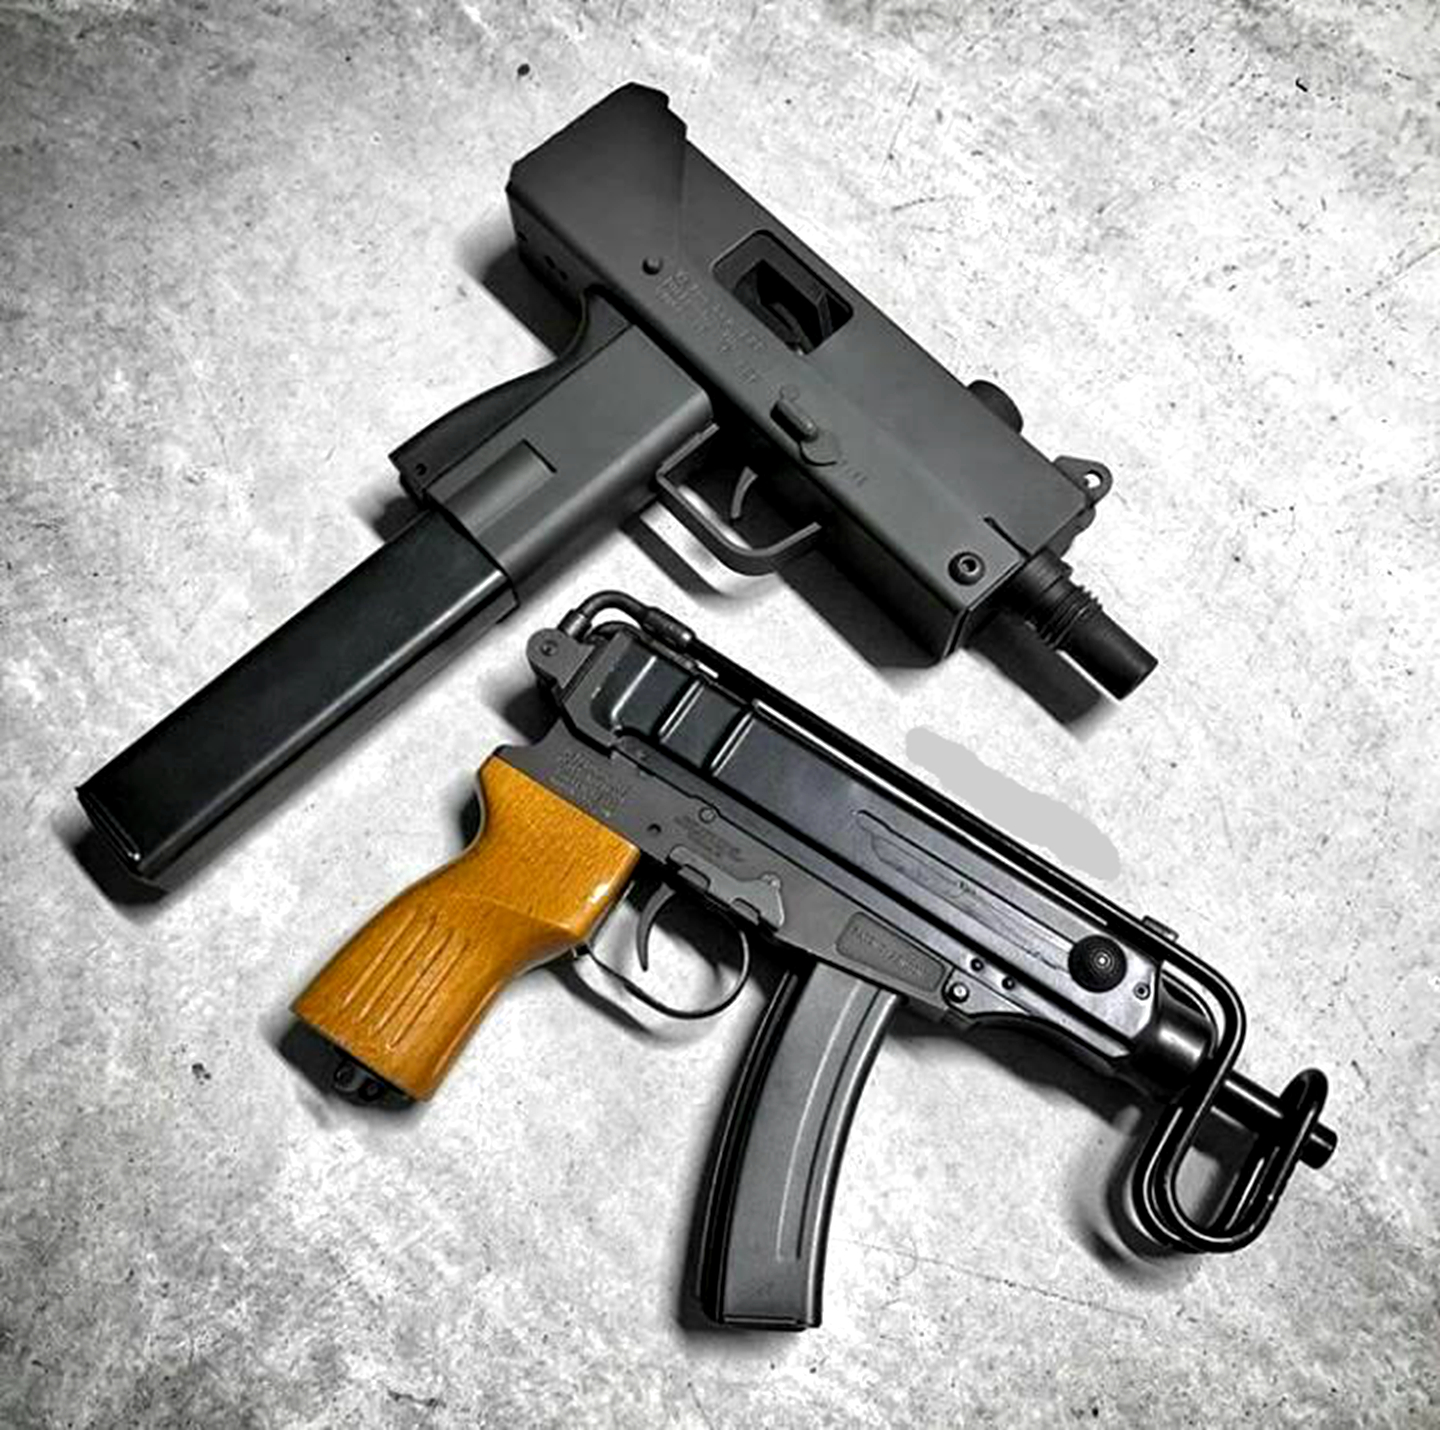 61蝎式冲锋枪:"蝎"式(scorpion)冲锋枪,是由原华约国家捷克斯洛伐克